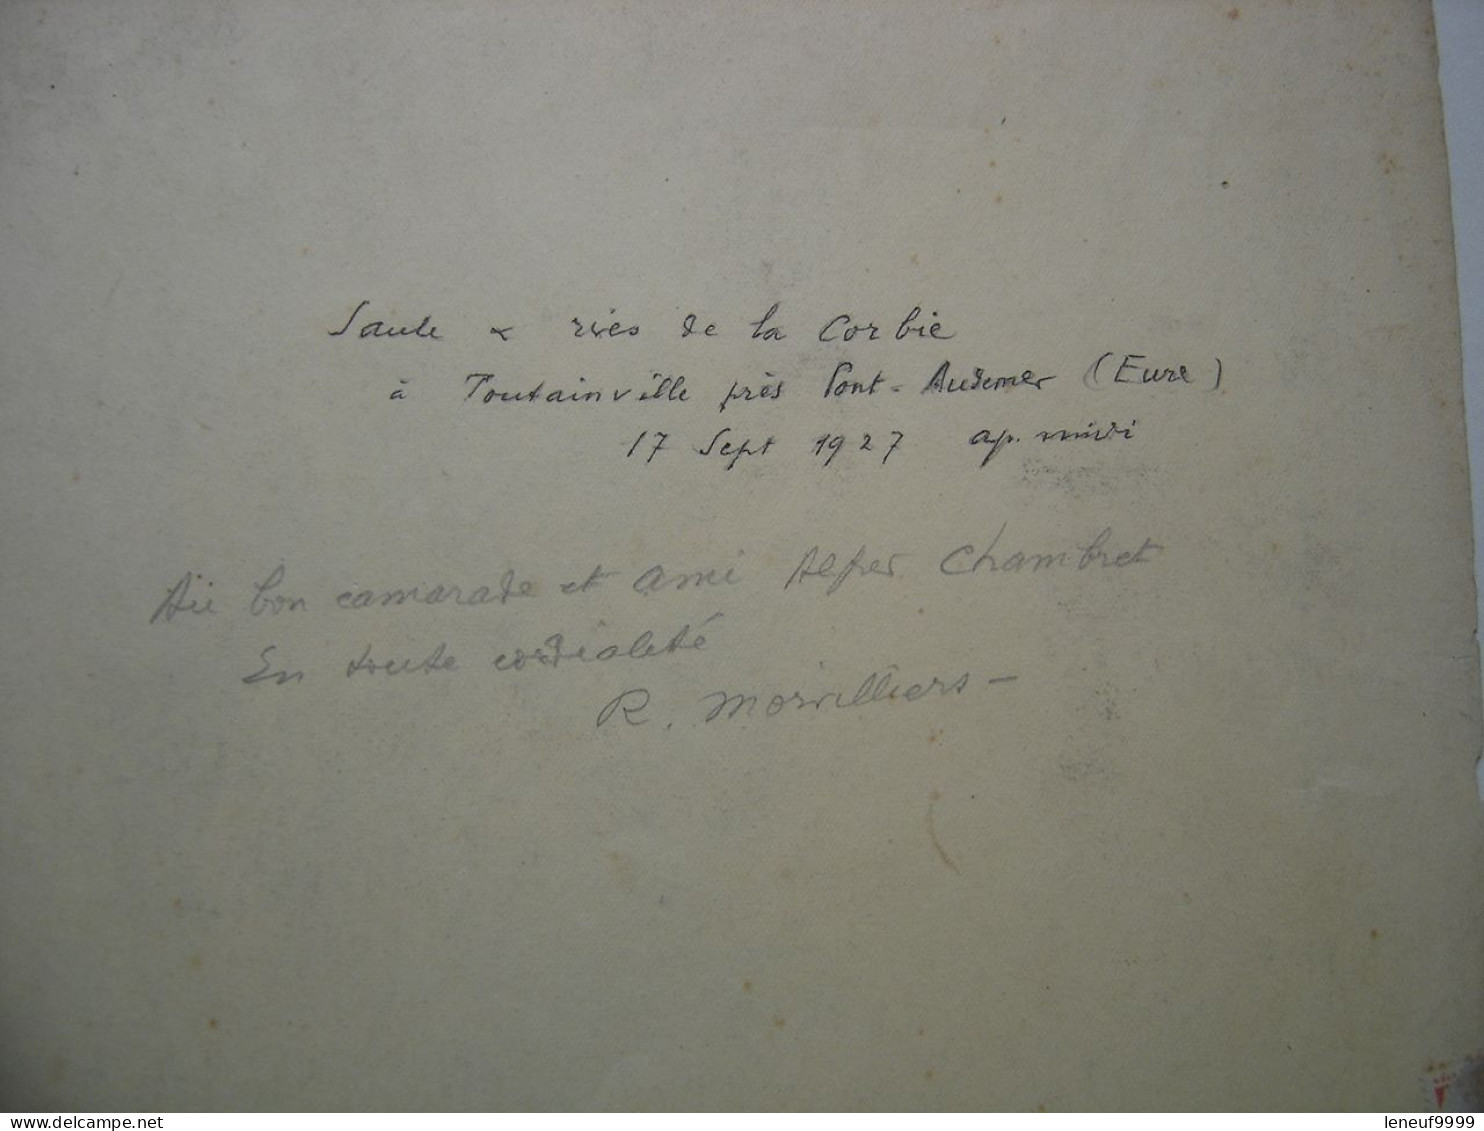 Estampe Signee Et Dedicacee R MORVILLIERS 1927 Situee Dans L'Eure Corbie Toutainville - Art Contemporain